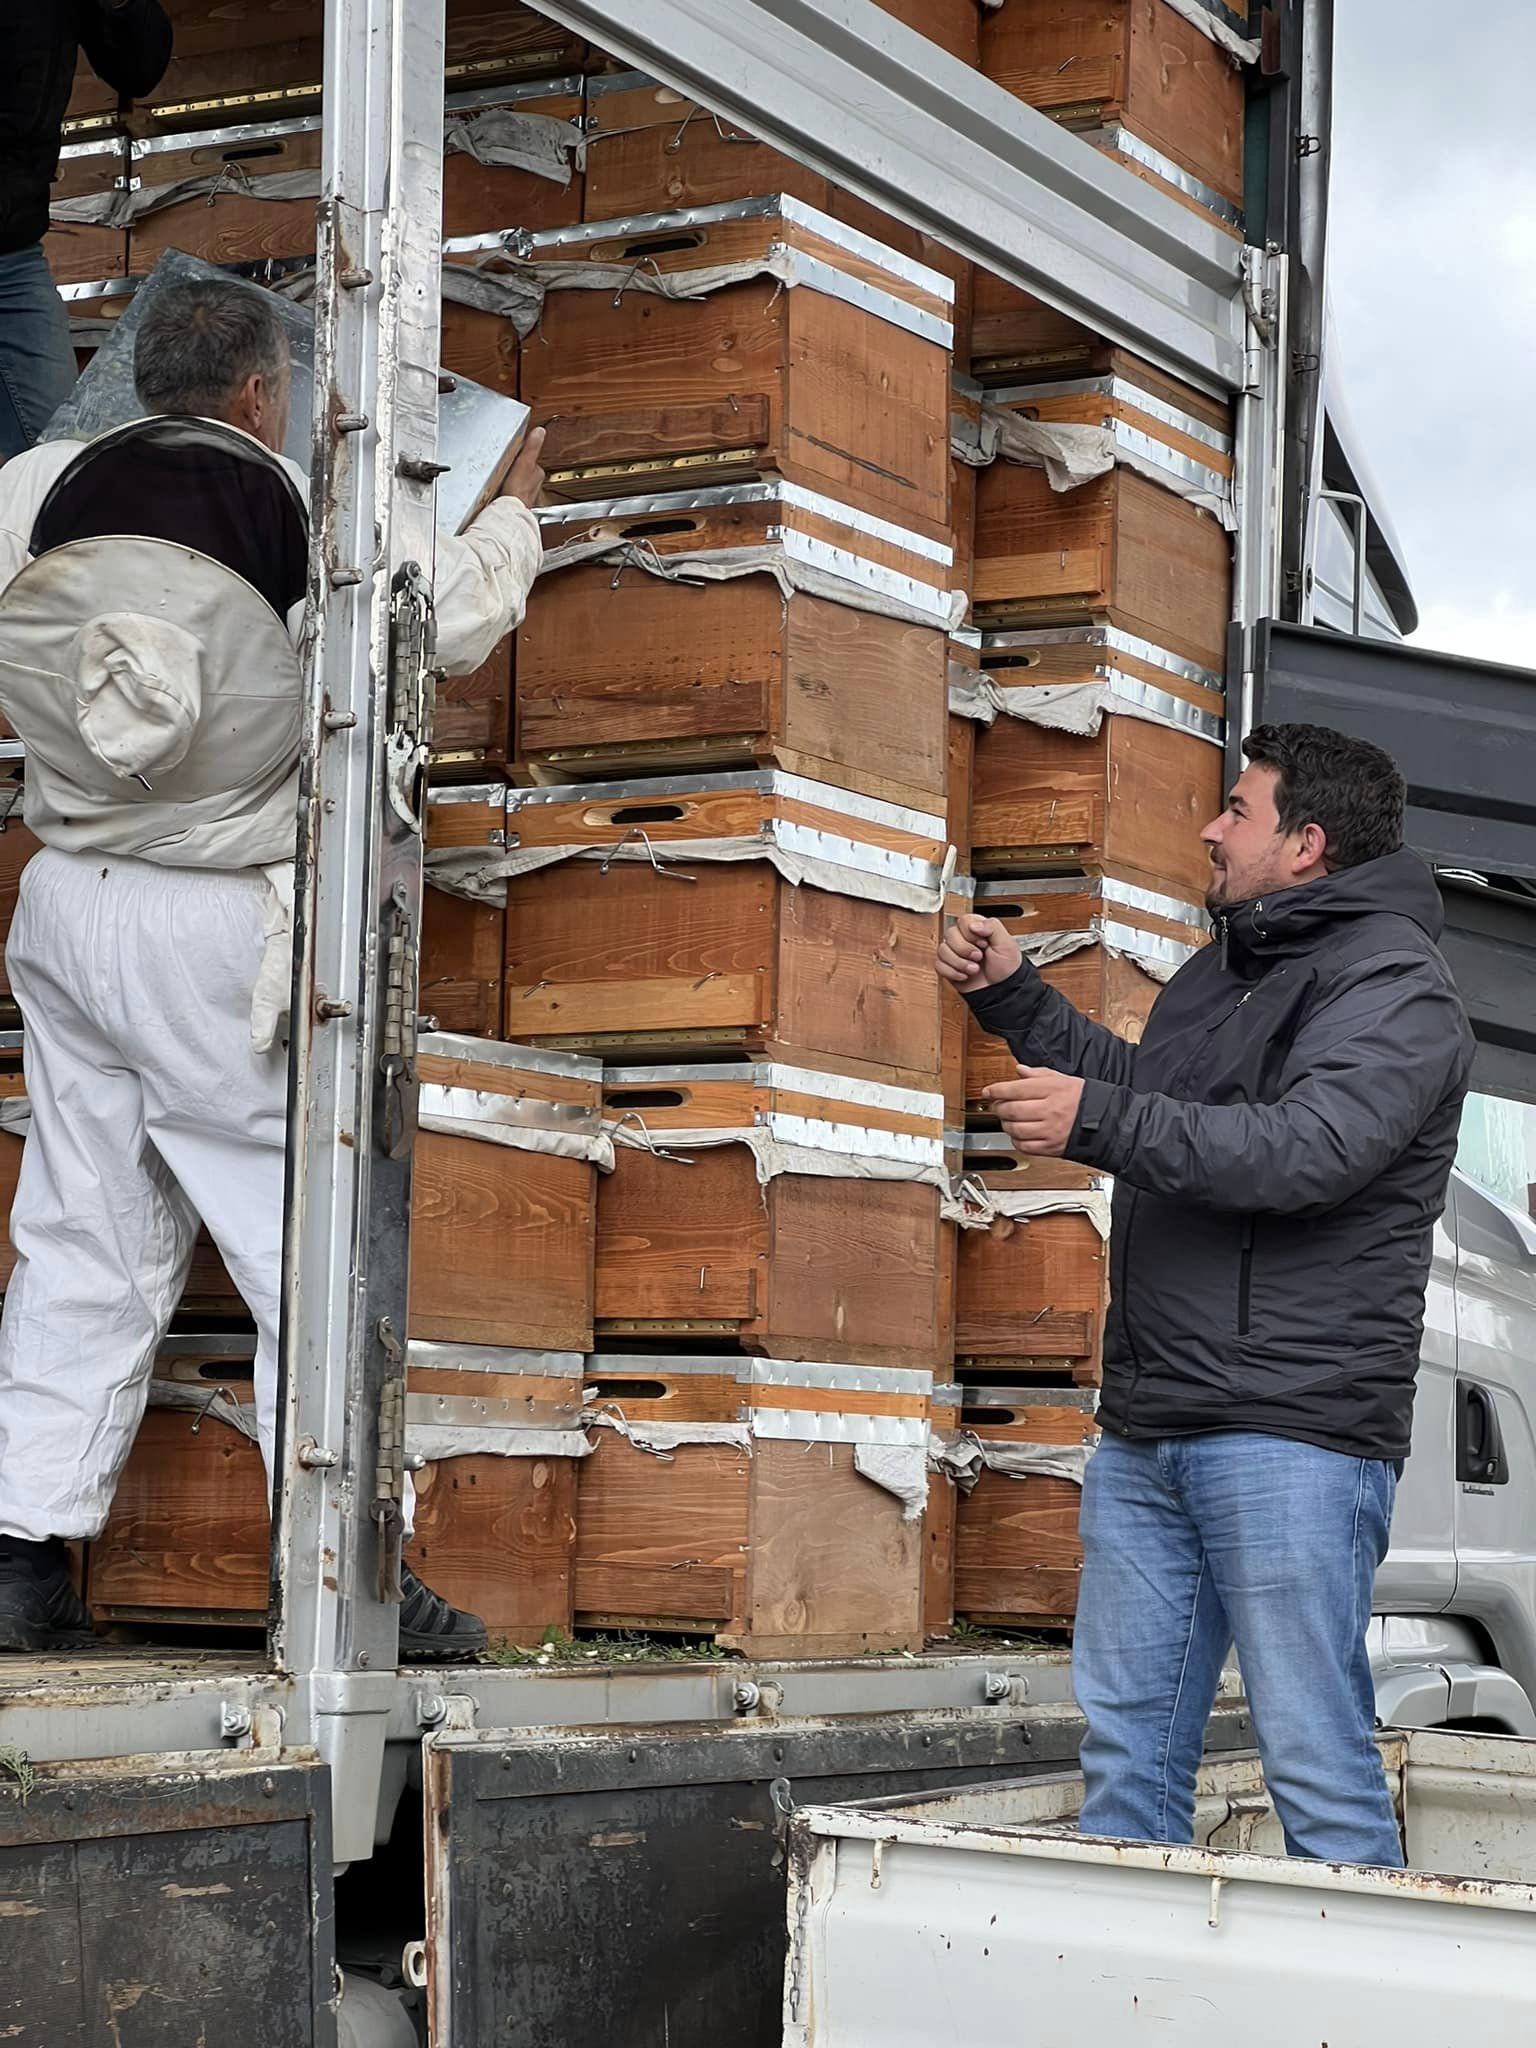 Arıcılara ürünleri teslim edilmeye başlandı